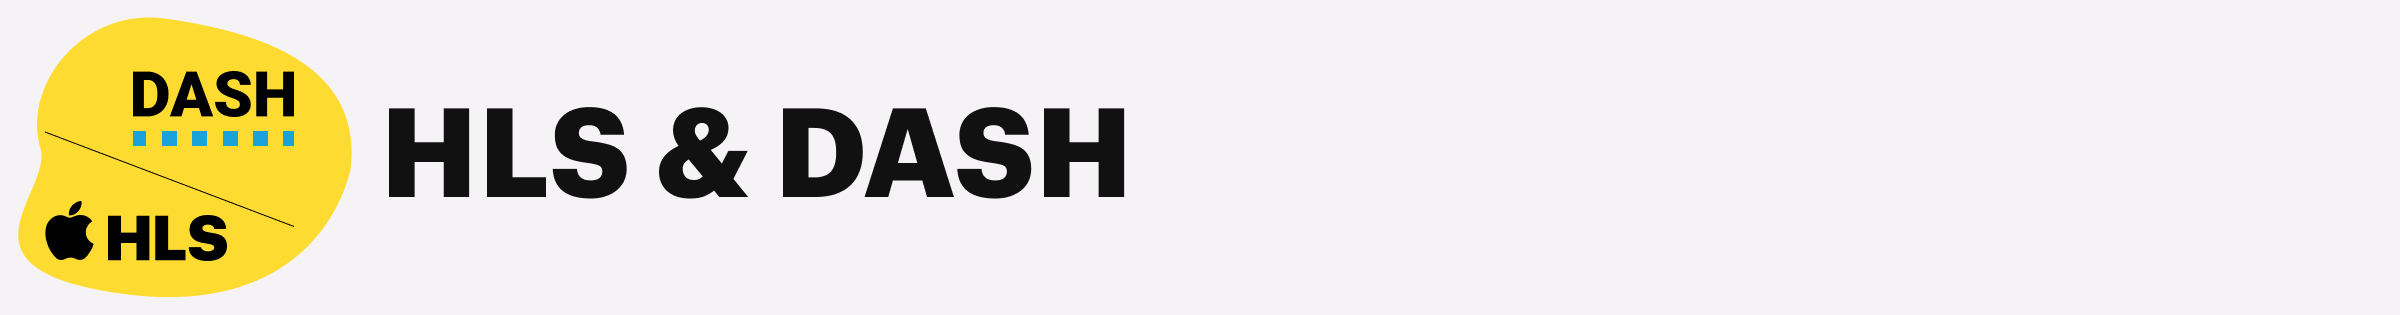 Logos of HLS & DASH